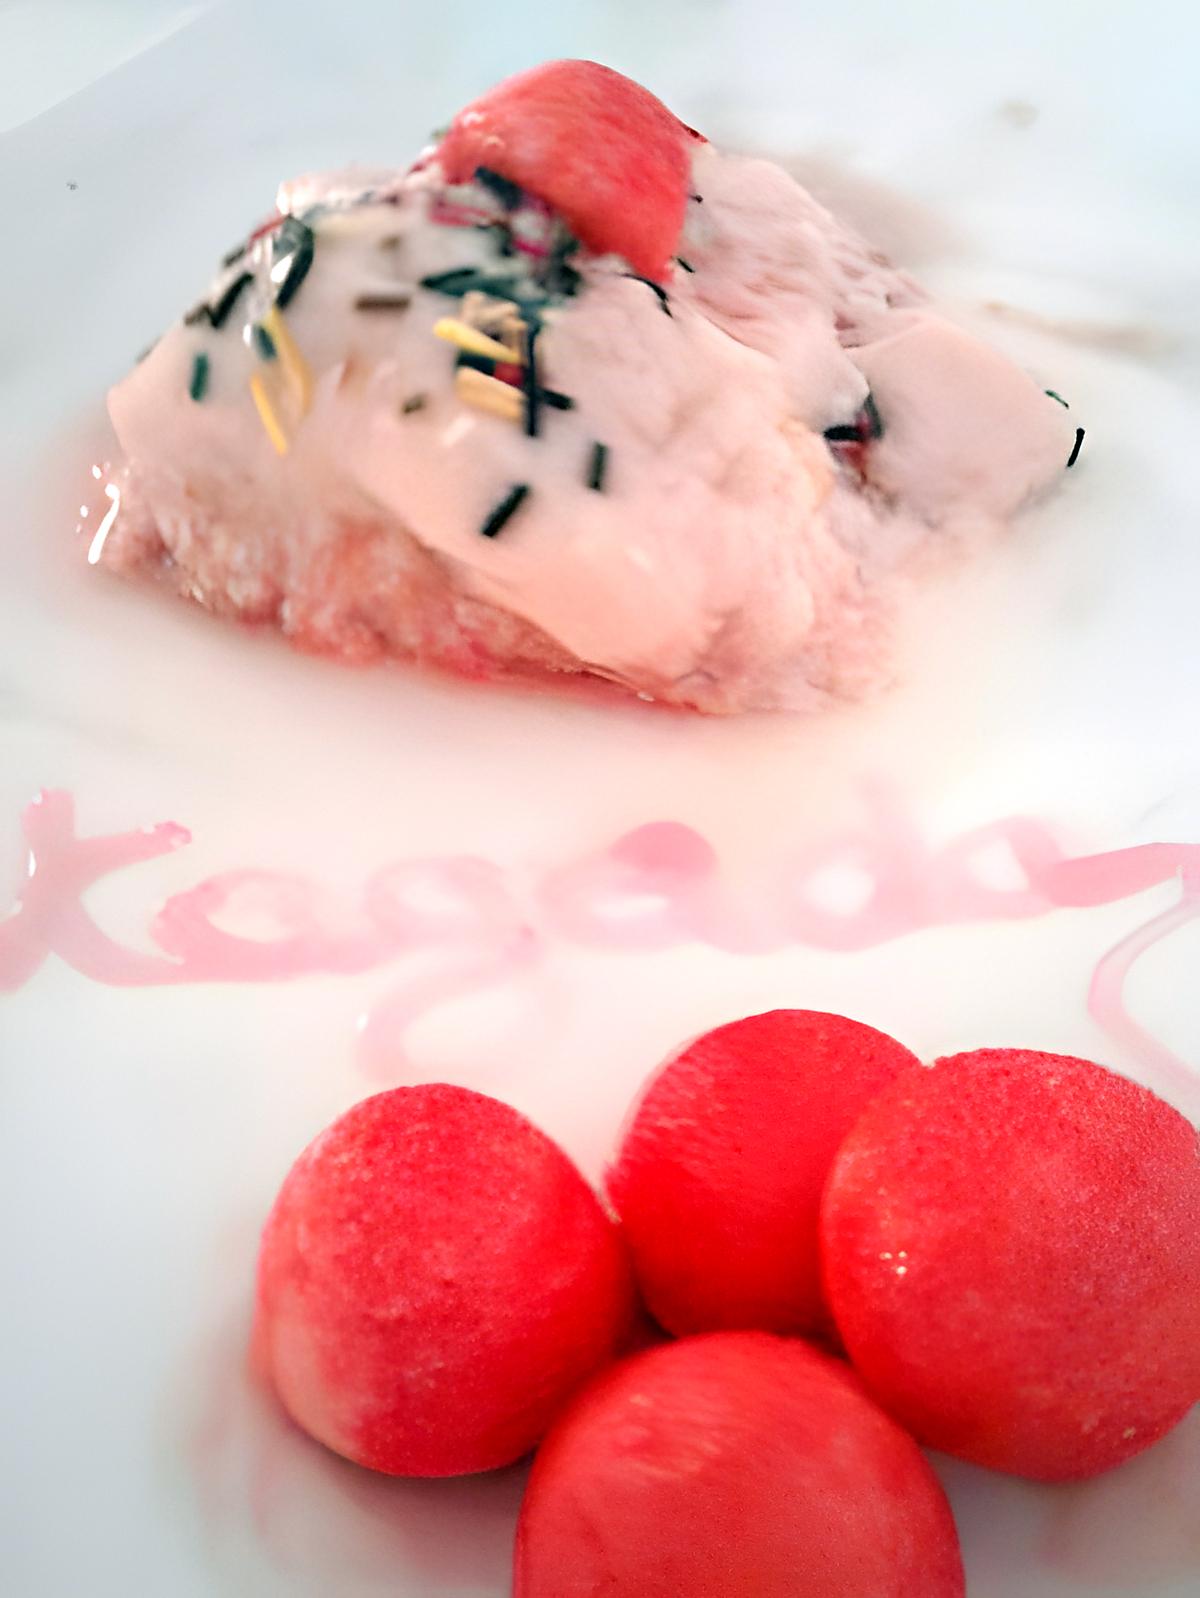 recette Flan au fraise Tagada ®